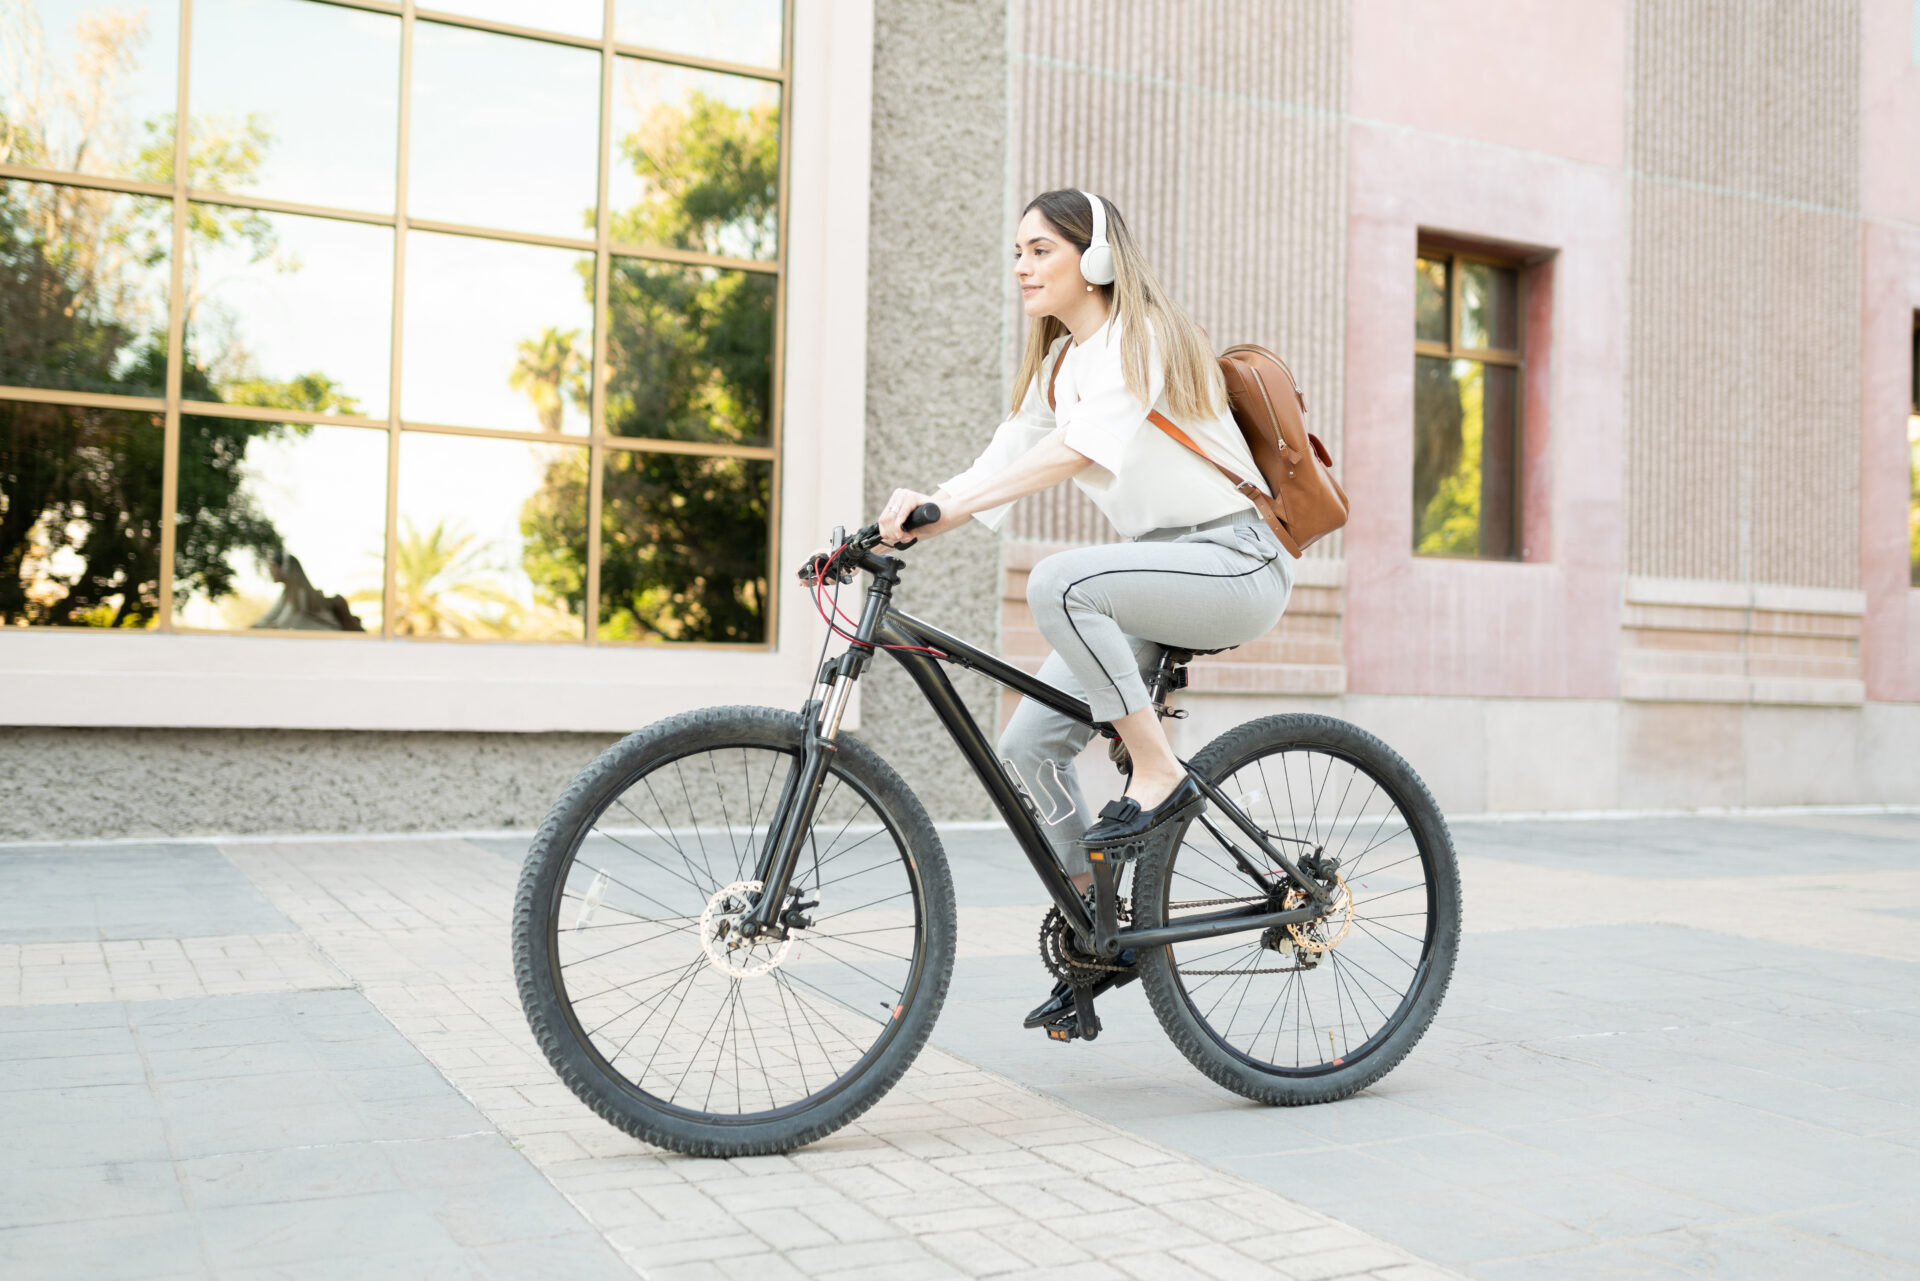 Zukunft Fahrrad: Fahrrad als Wegbereiter der Mobilität